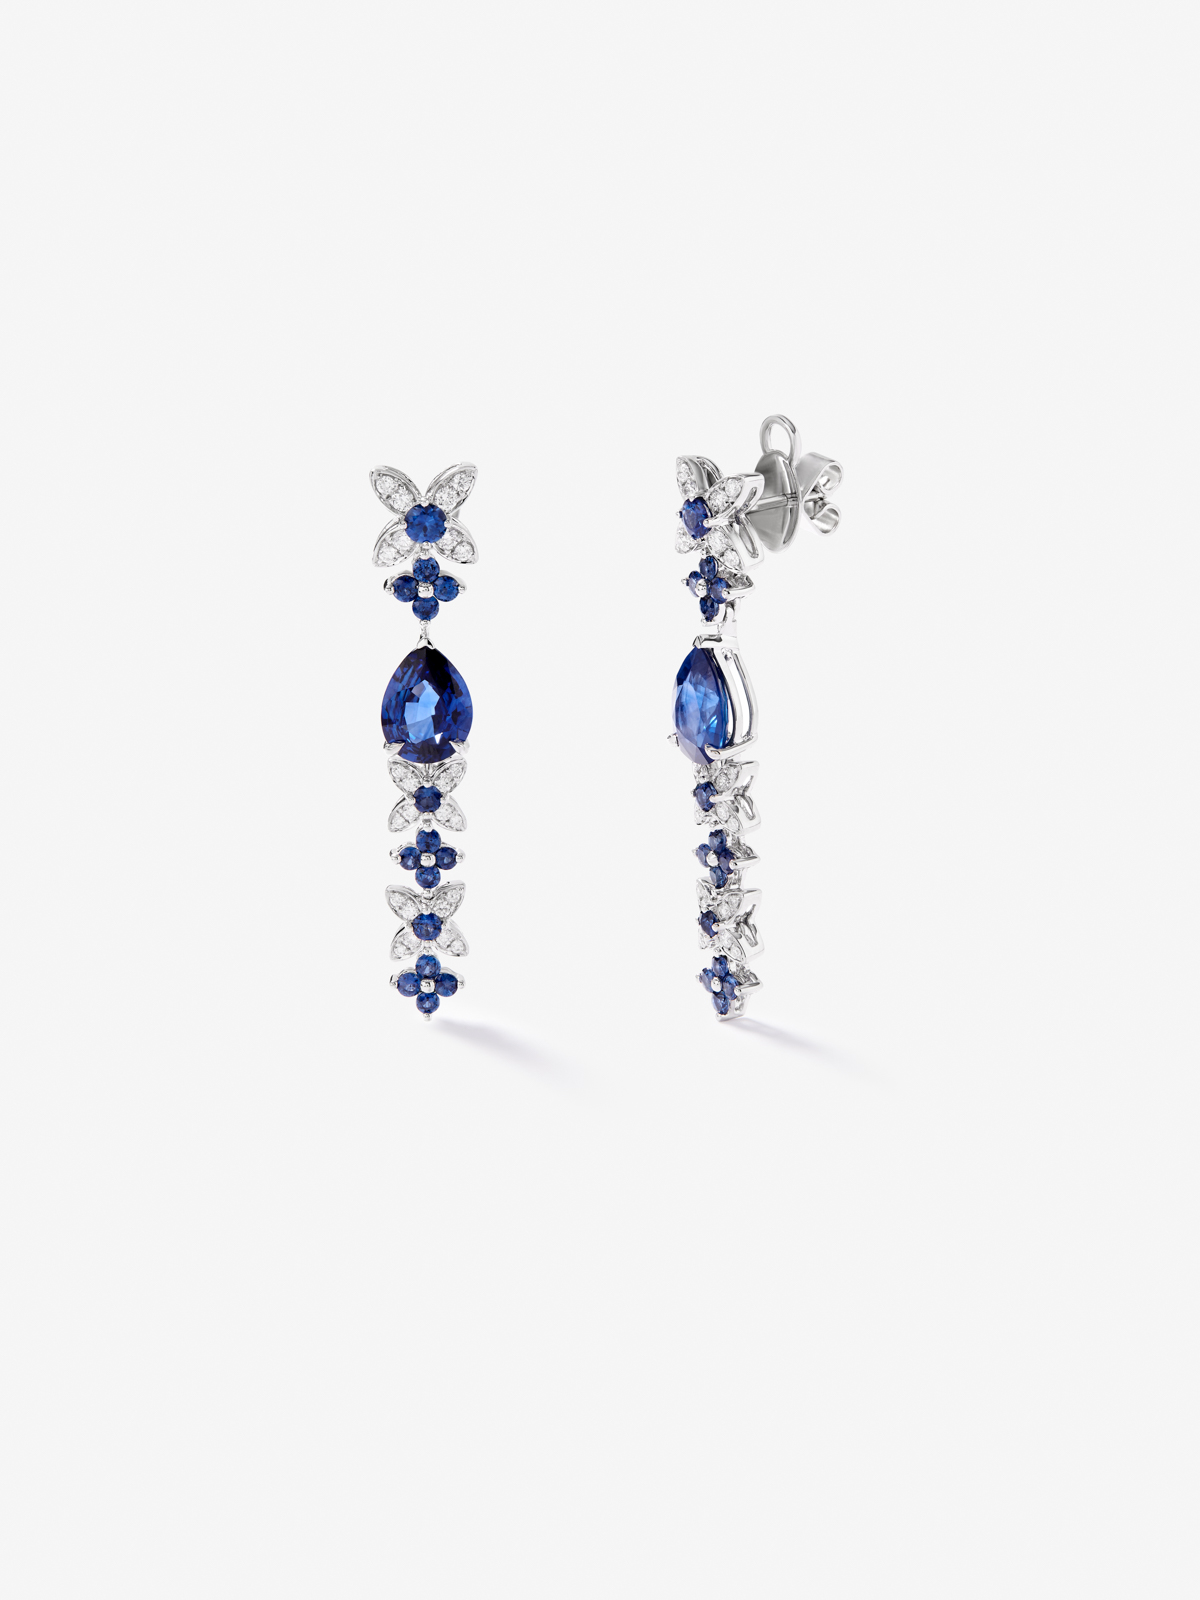 Pendientes de oro blanco de 18K con zafiros azul royal en talla pera de 4,05 cts, zafiros azules en talla brillante de 1,27 cts  y diamantes blancos en talla brillante de 0,5 cts